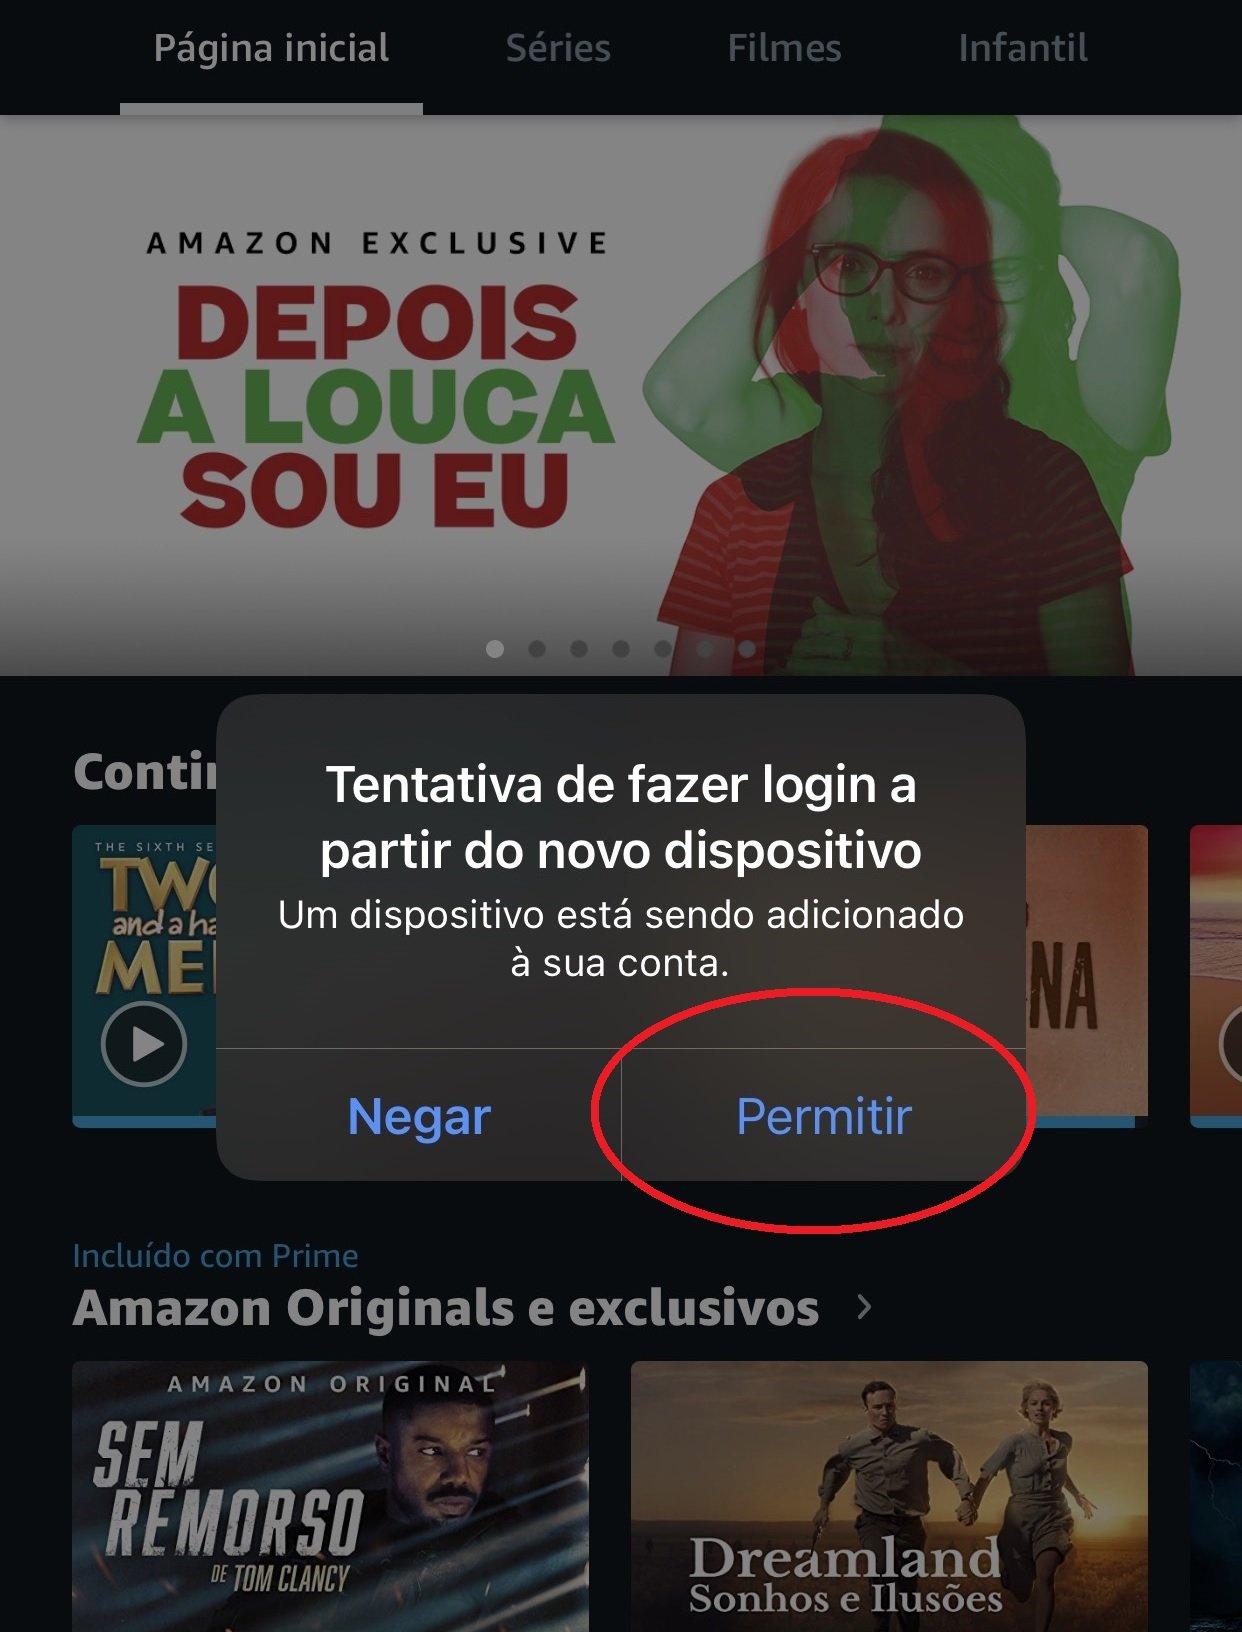 Aperte no botão permitir para que o app do Amazon Prime Video autorize o login no novo aparelho